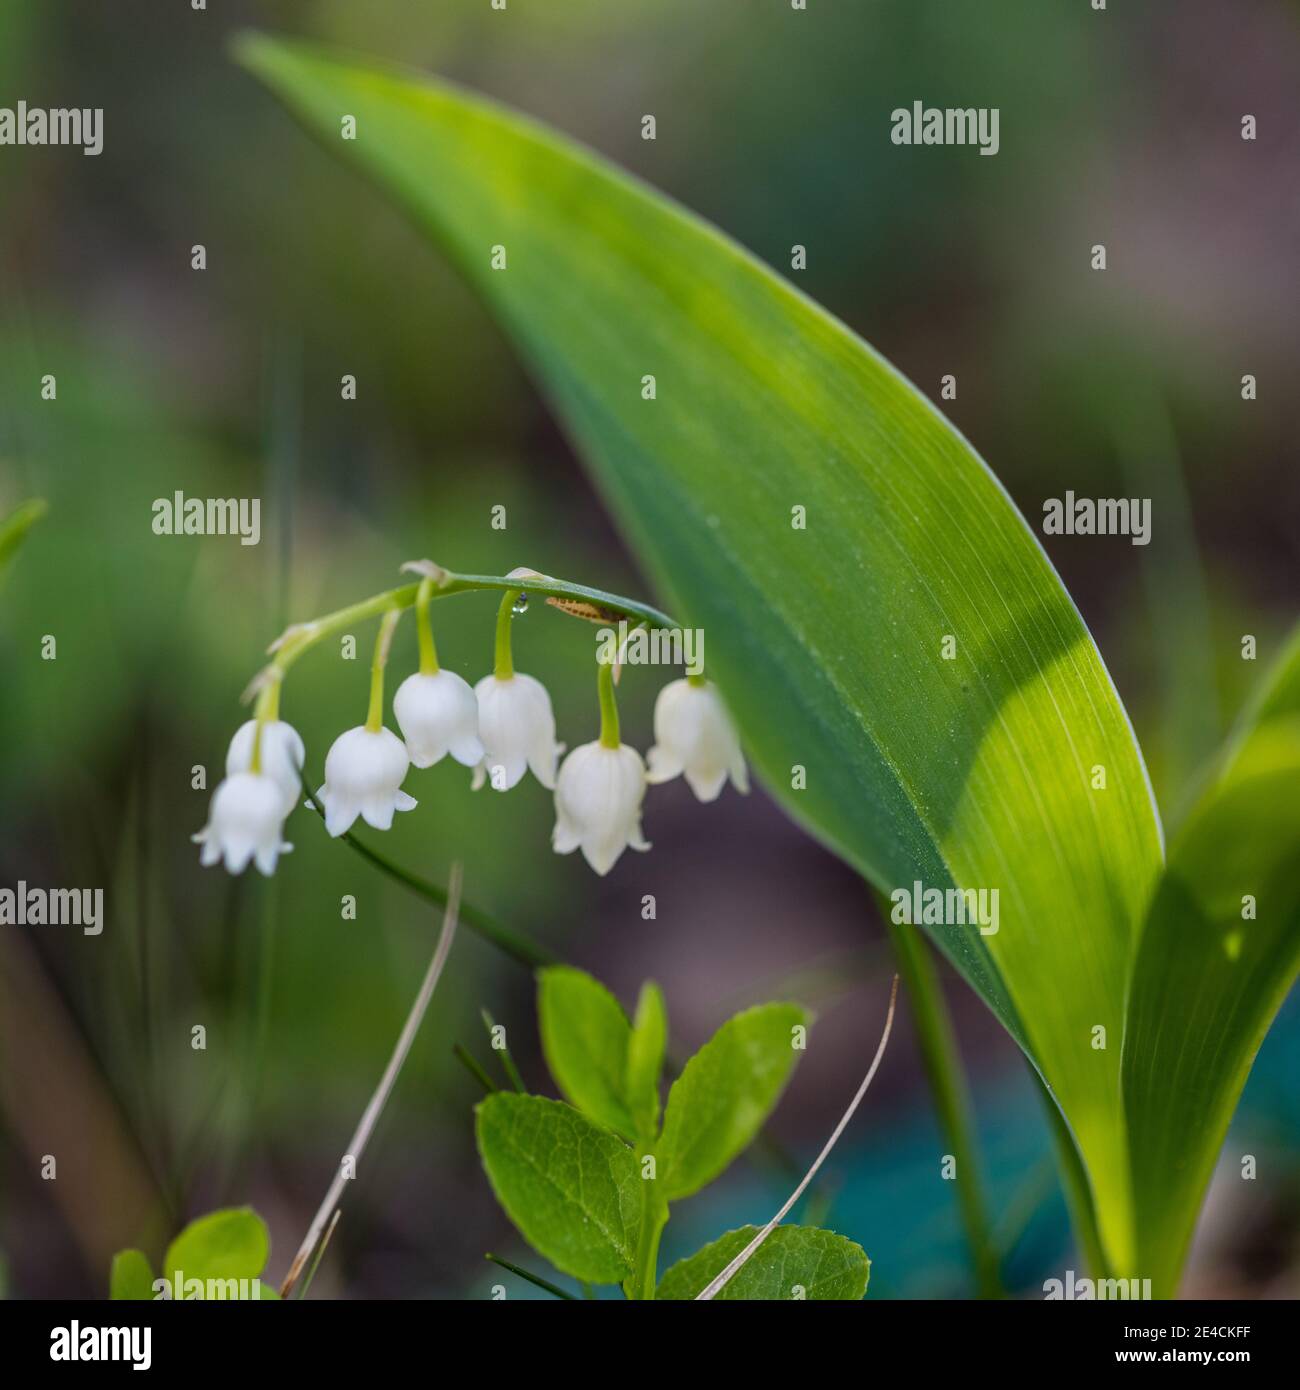 Lily of the Valley, Liljekonvalj (Convallaria majalis) Stock Photo